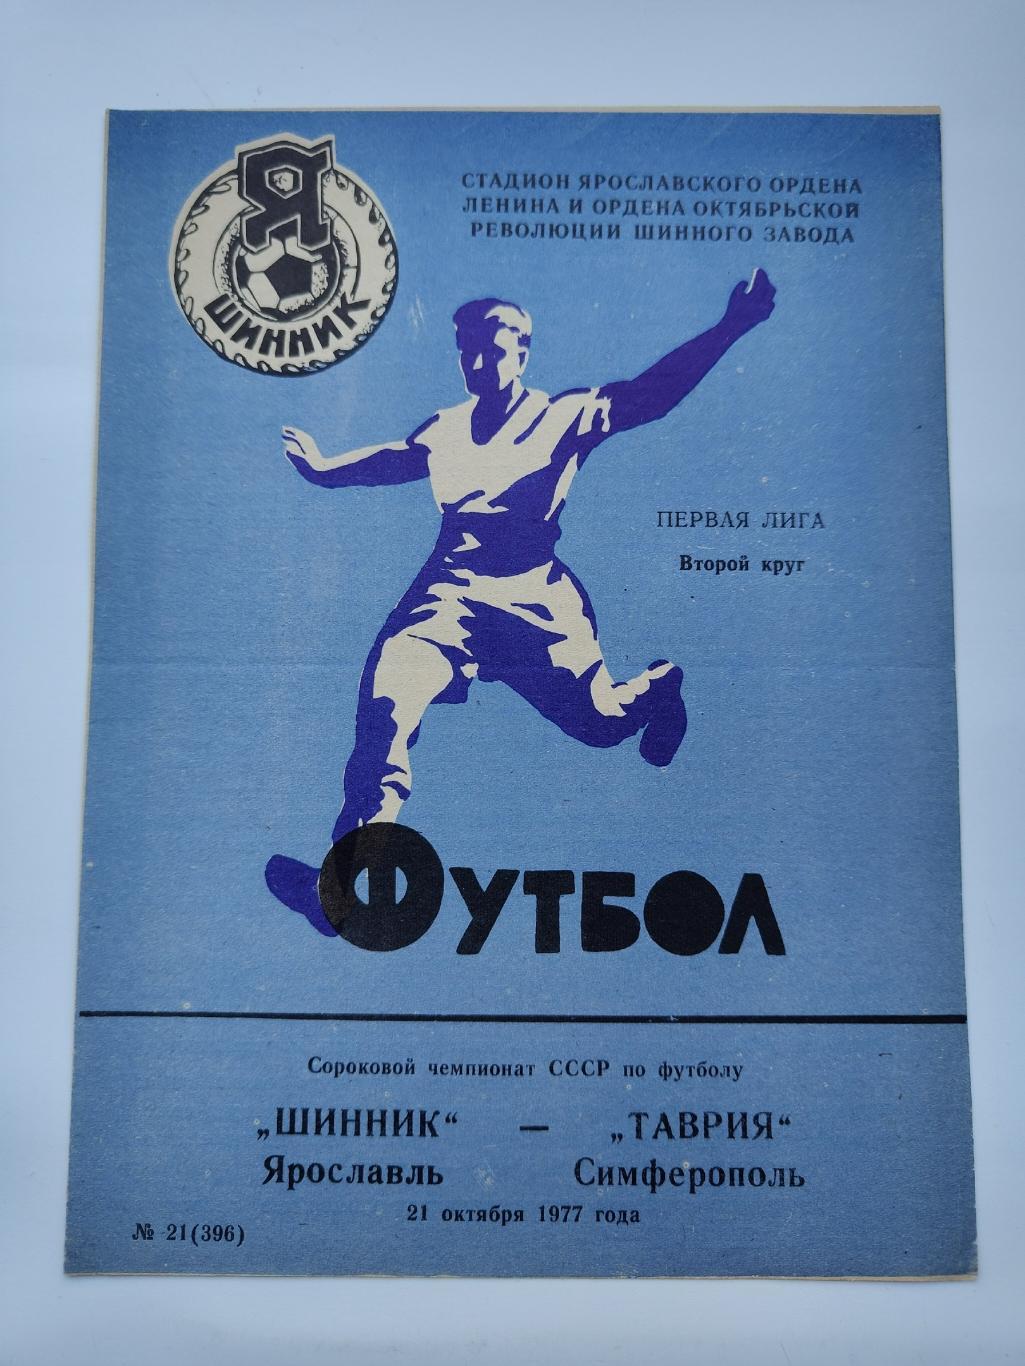 Шинник Ярославль - Таврия Симферополь 1977